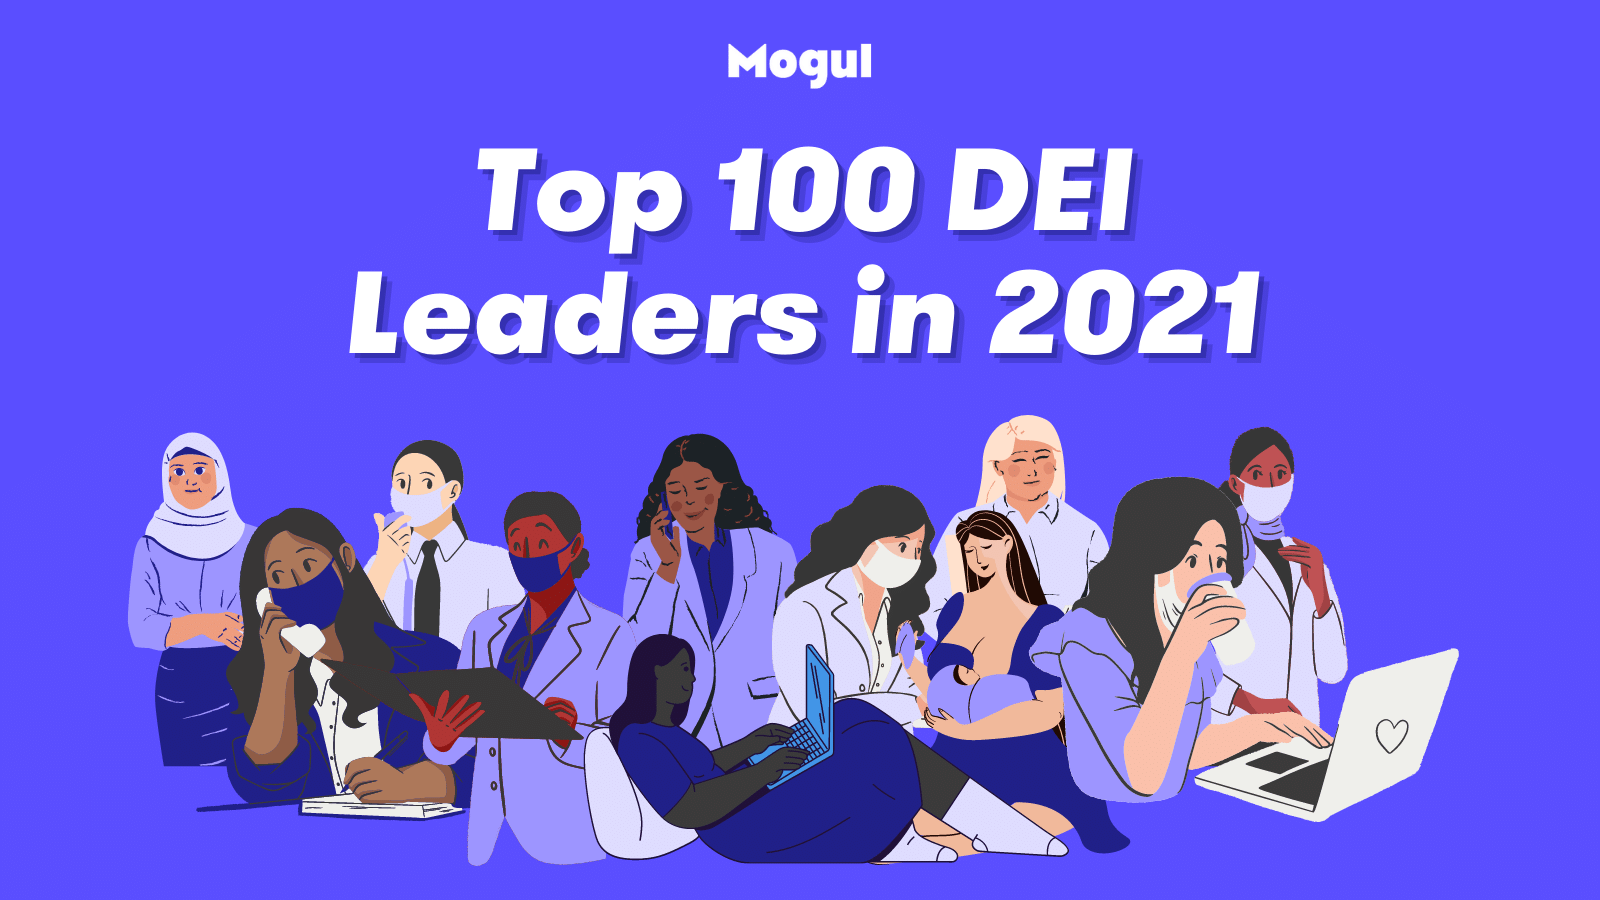 Mogul's Top 100 DEI Leaders in 2021